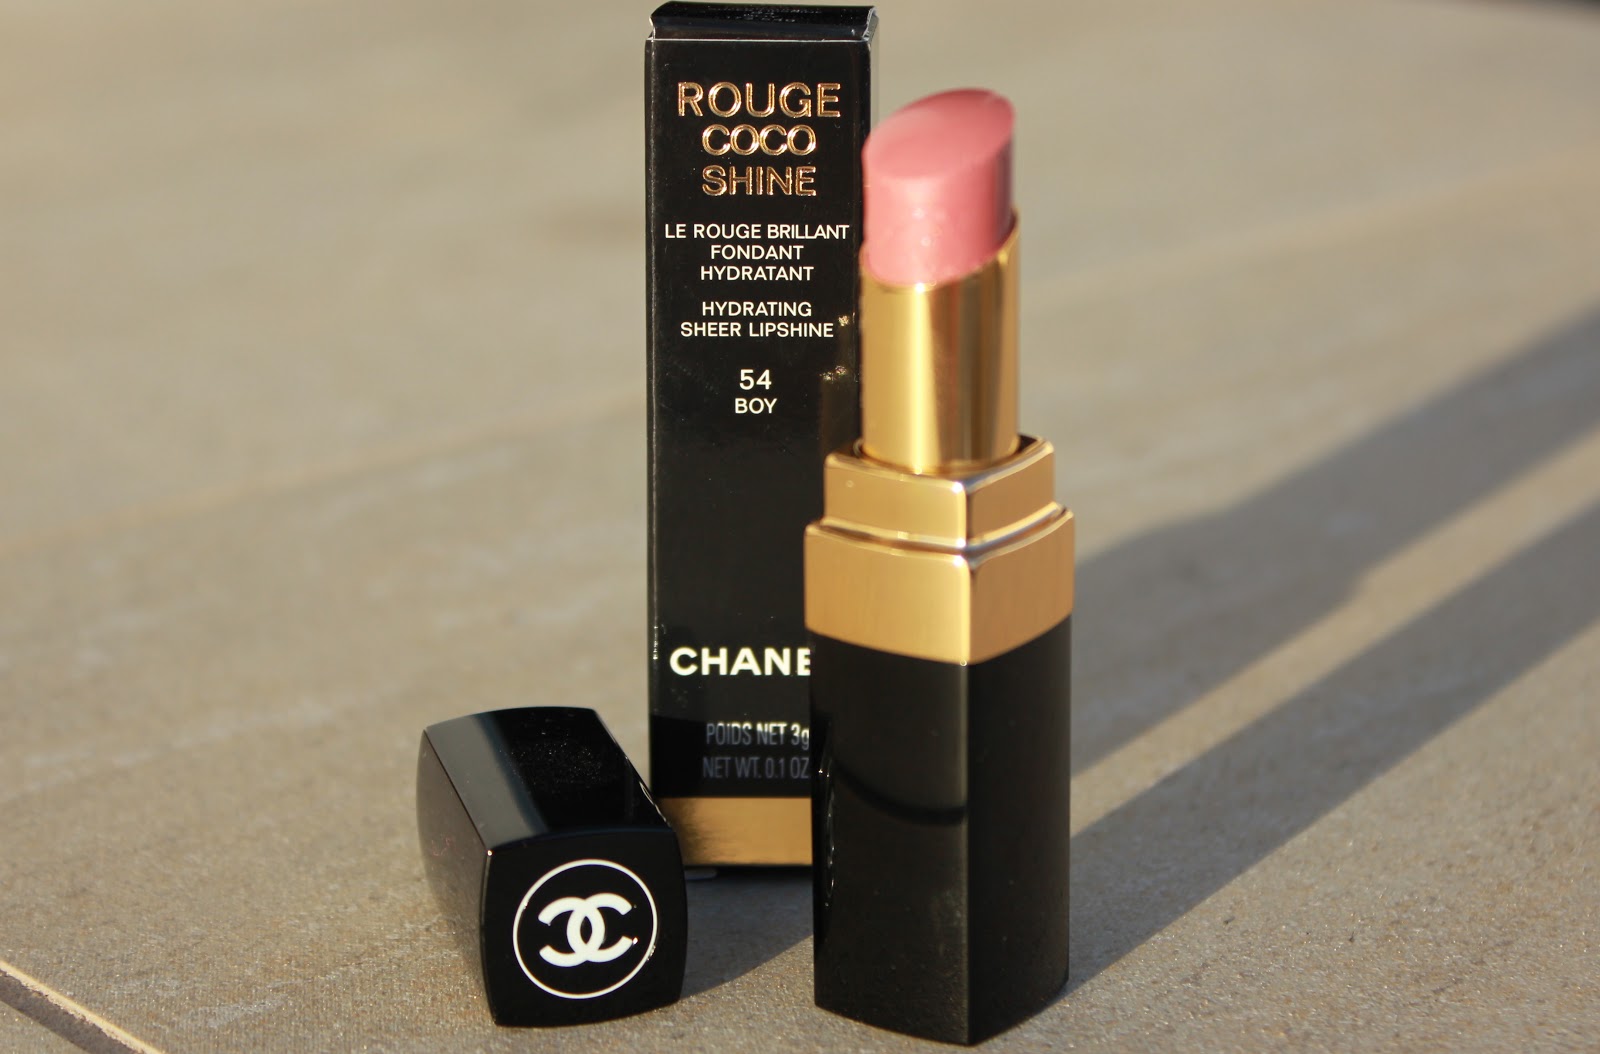 højdepunkt forbrydelse Fremragende Beauty She Wrote - Beauty Blog: Chanel Rouge Coco Shine - 54 Boy